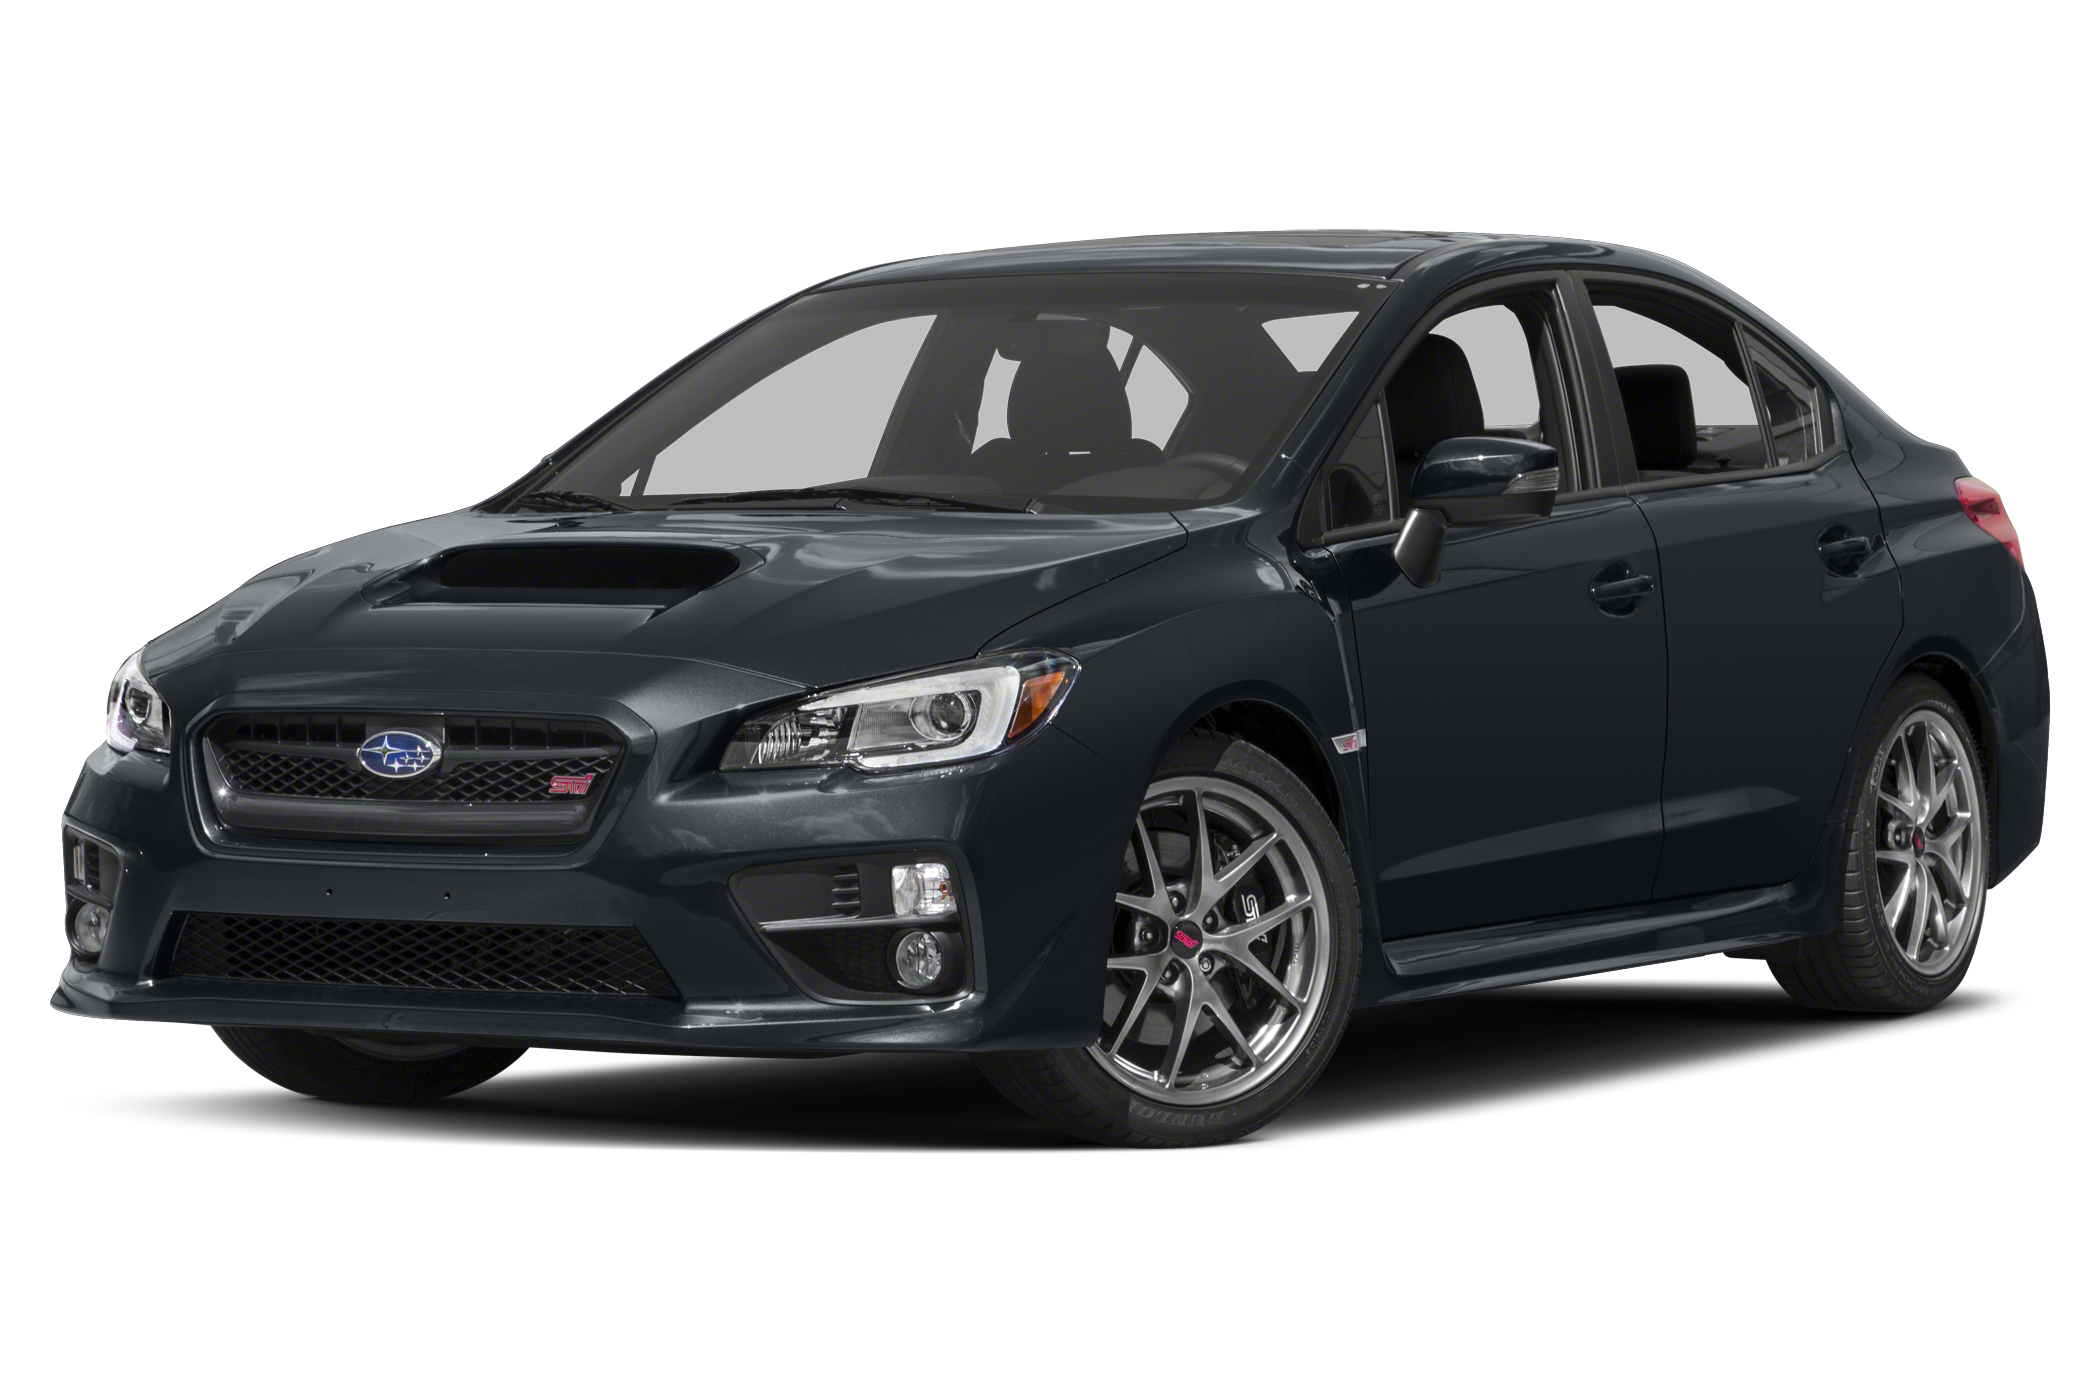 2016 Subaru WRX STI View Specs, Prices & Photos WHEELS.ca